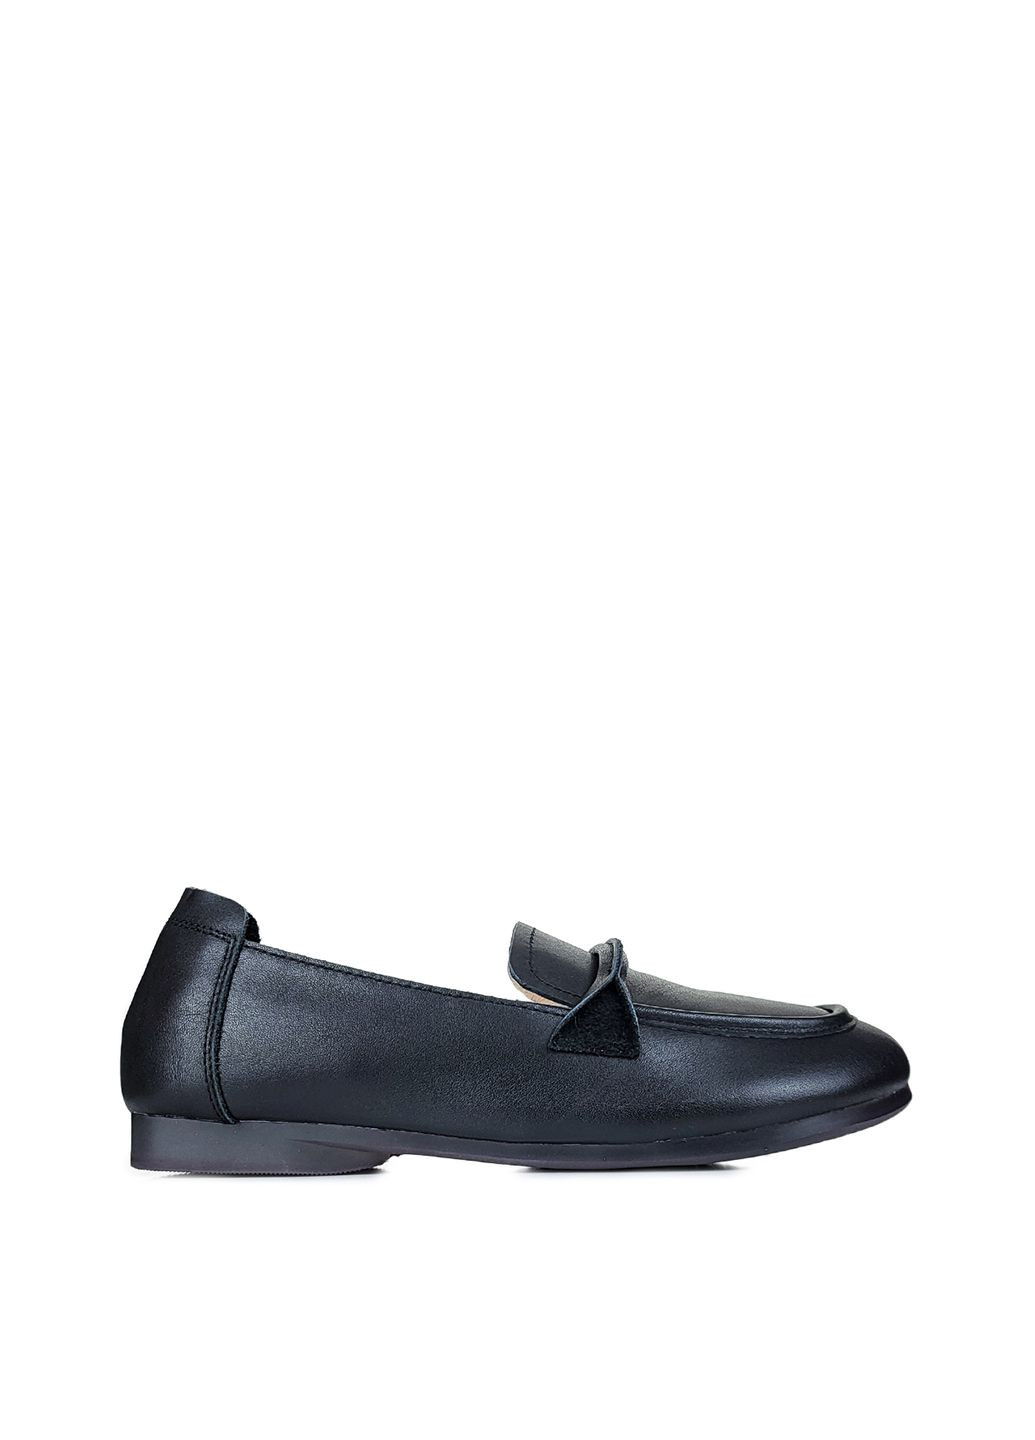 Шкіряні жіночі туфлі без підборів чорні,,SL1618-1-1 чорні,36 Berkonty (292309054)